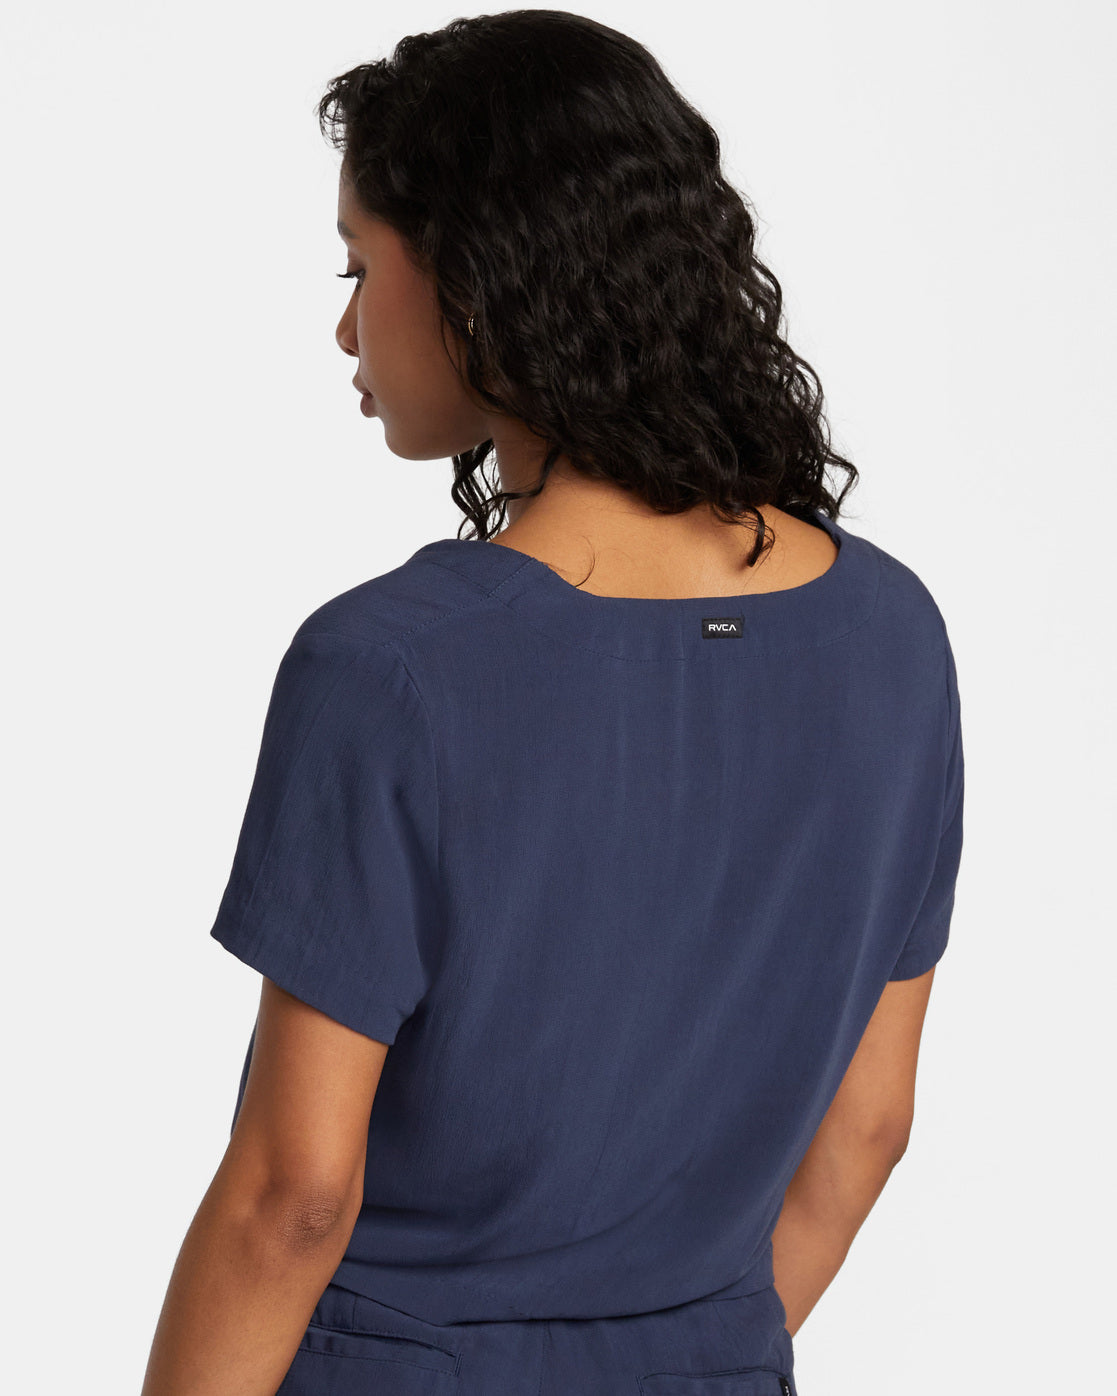 Vista Top Woven Shirt - Moody Blue – RVCA.com